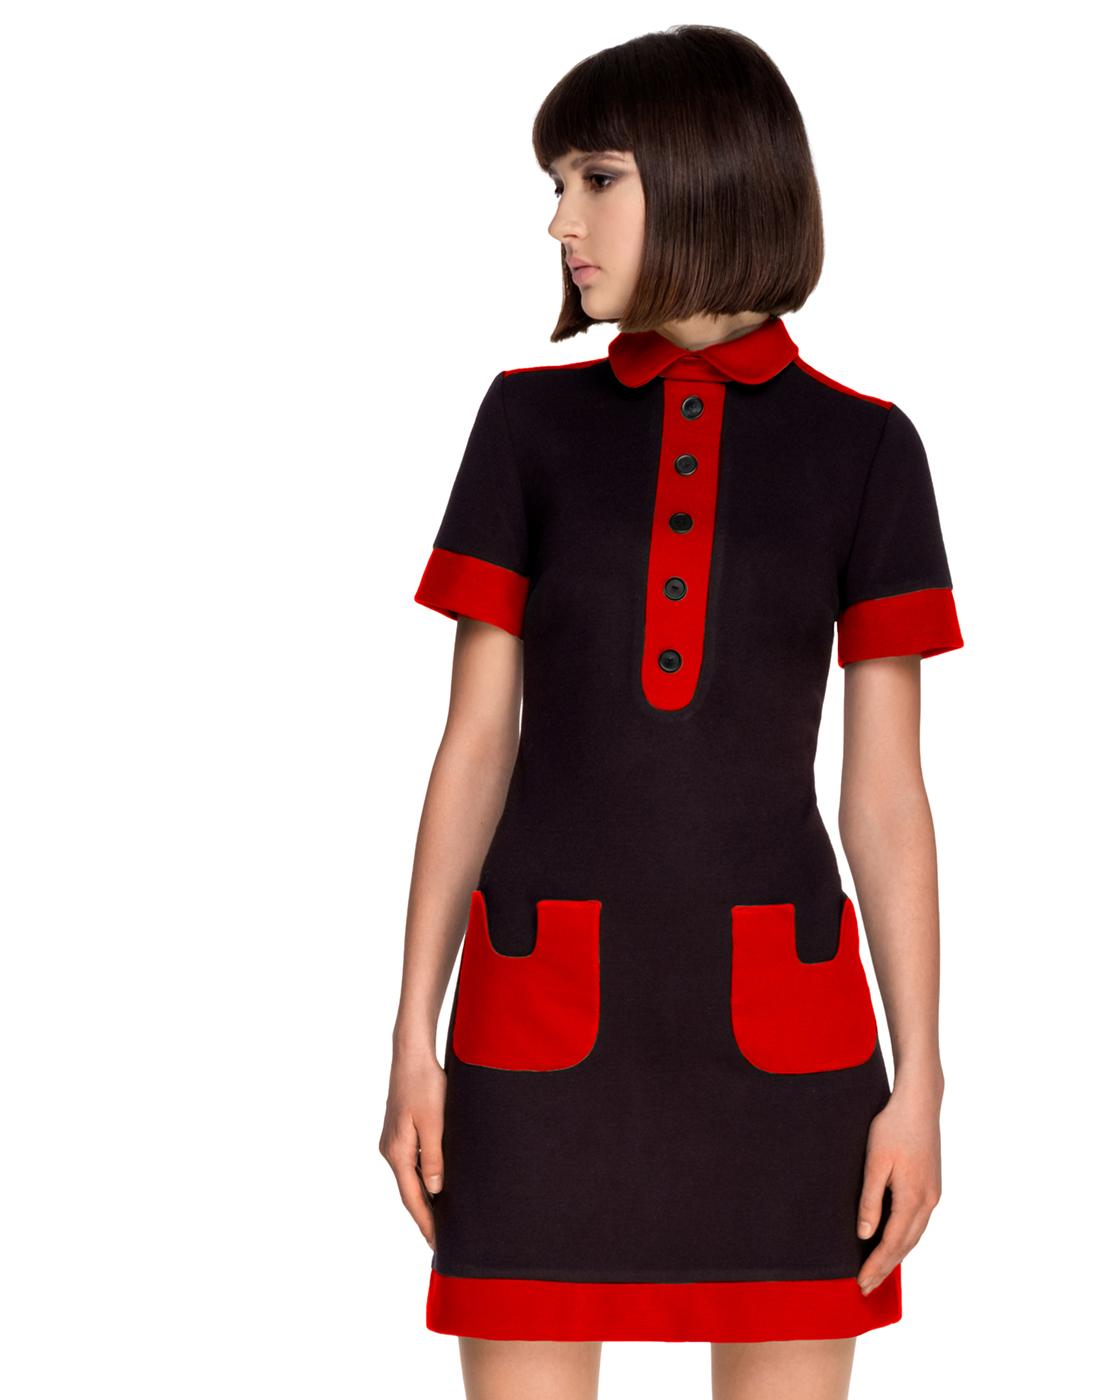 MARMALADE Retro 1960s Mod Contrast Pocket Polo Dress Black/Red